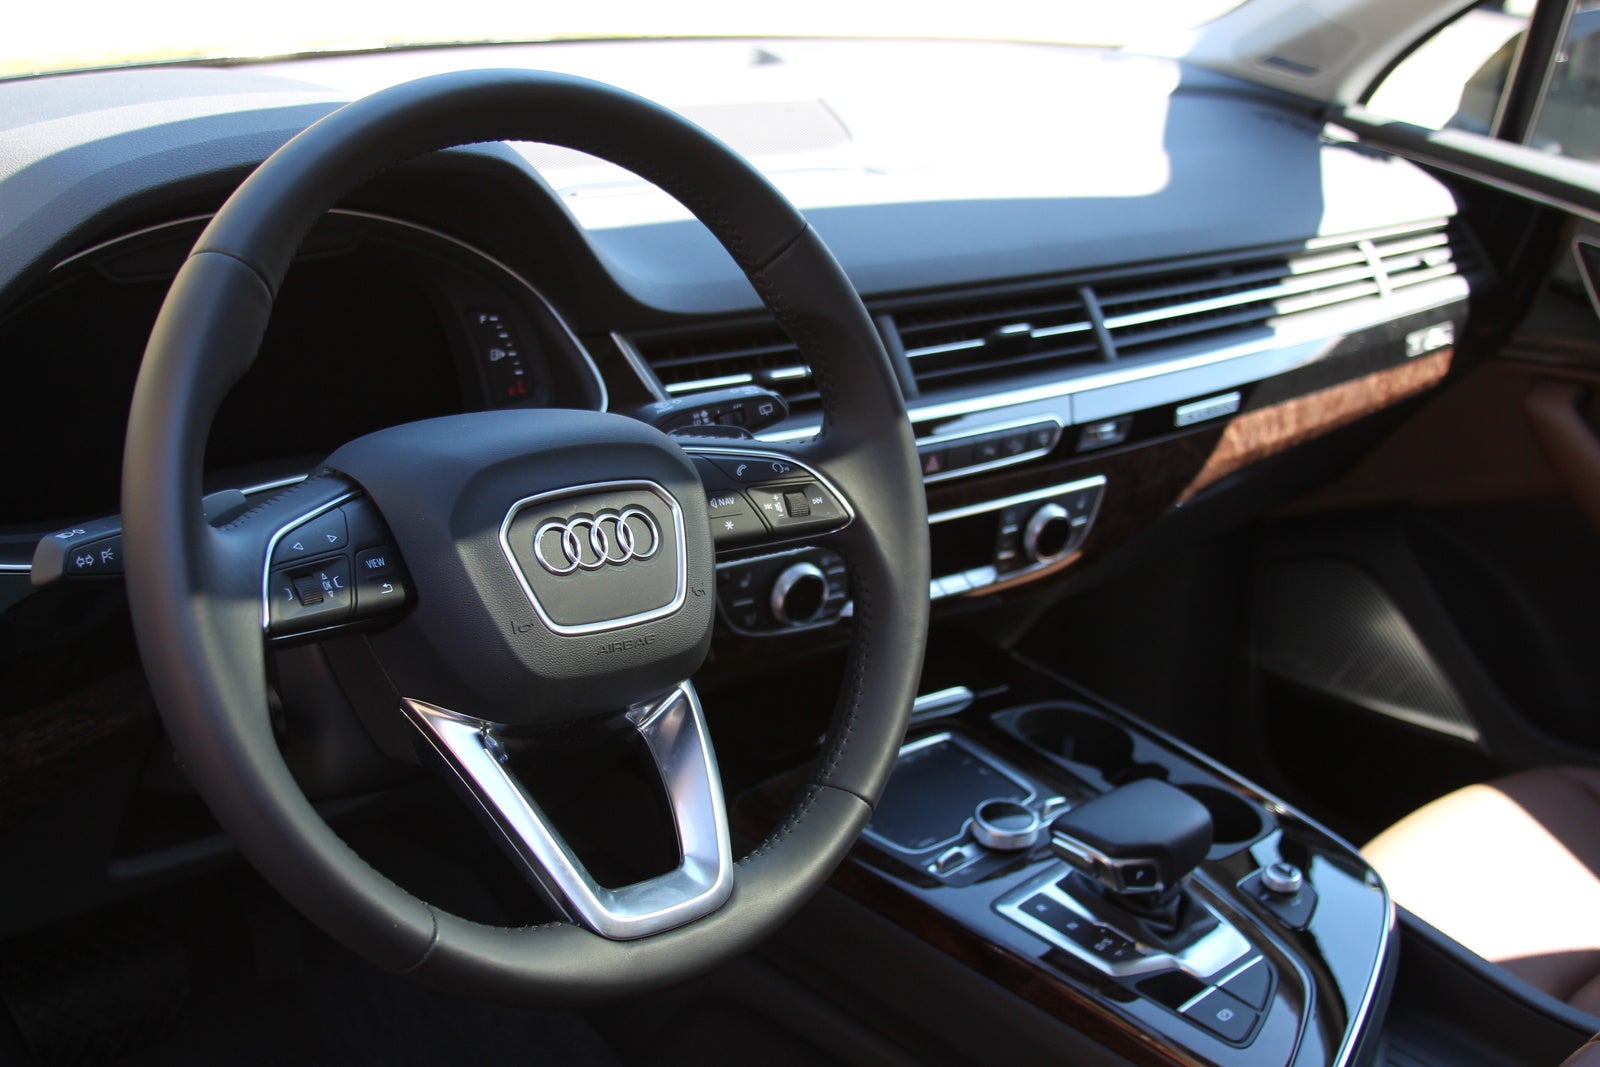 2017 Audi Q7 Interior Pictures Cargurus